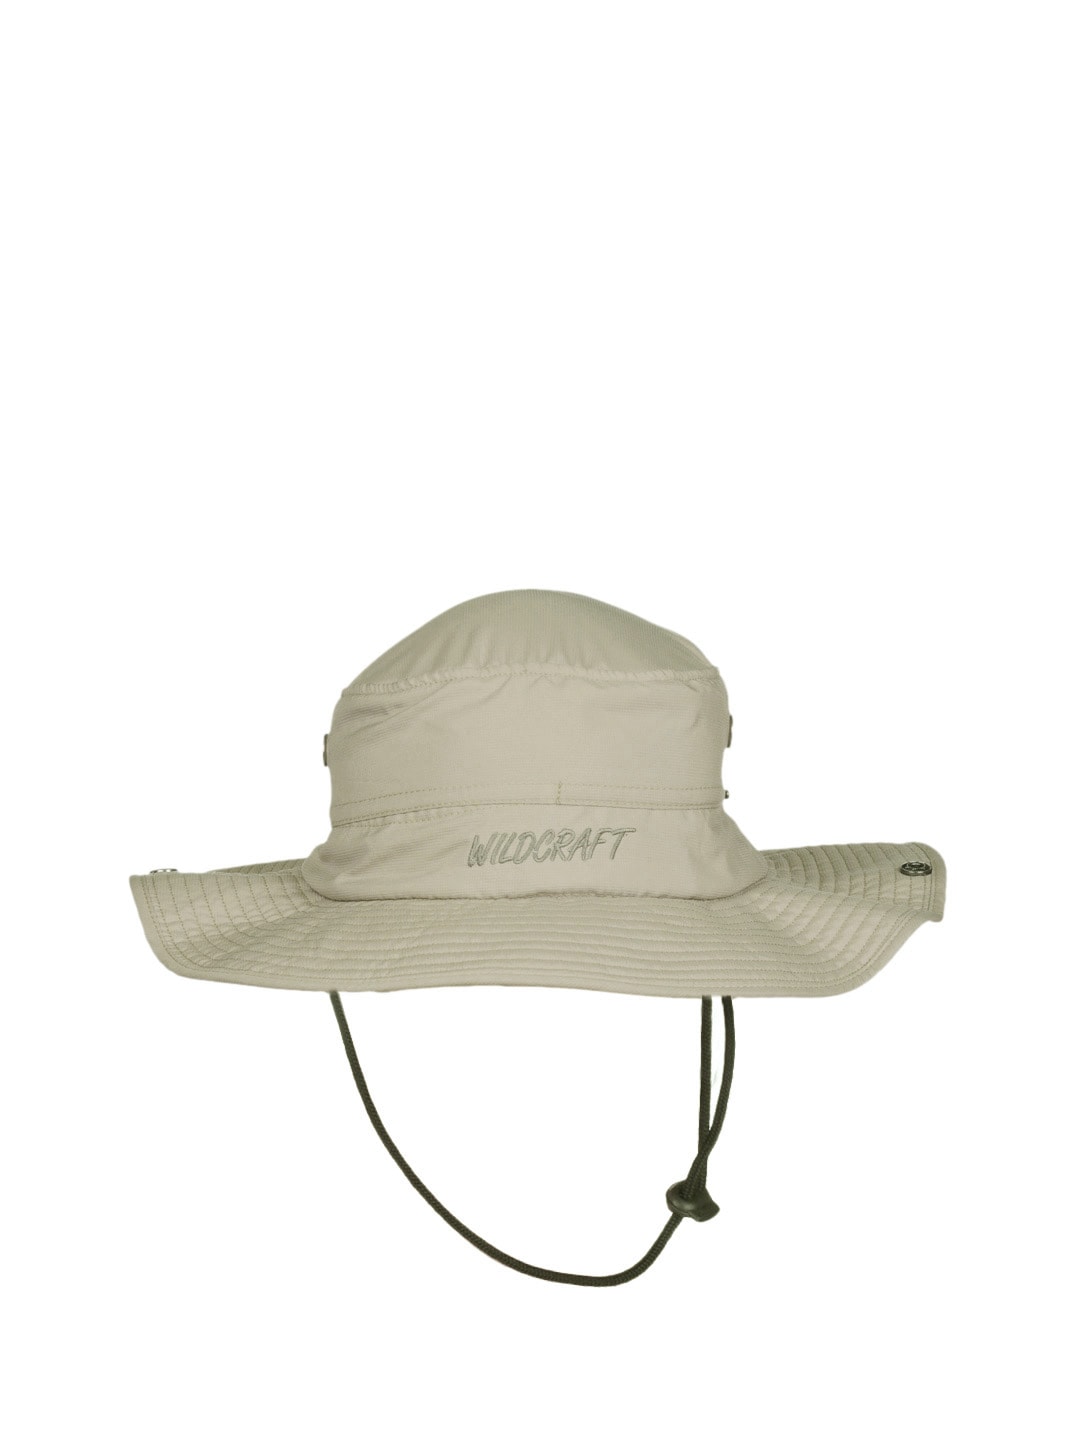 Wildcraft Unisex Beige Hat